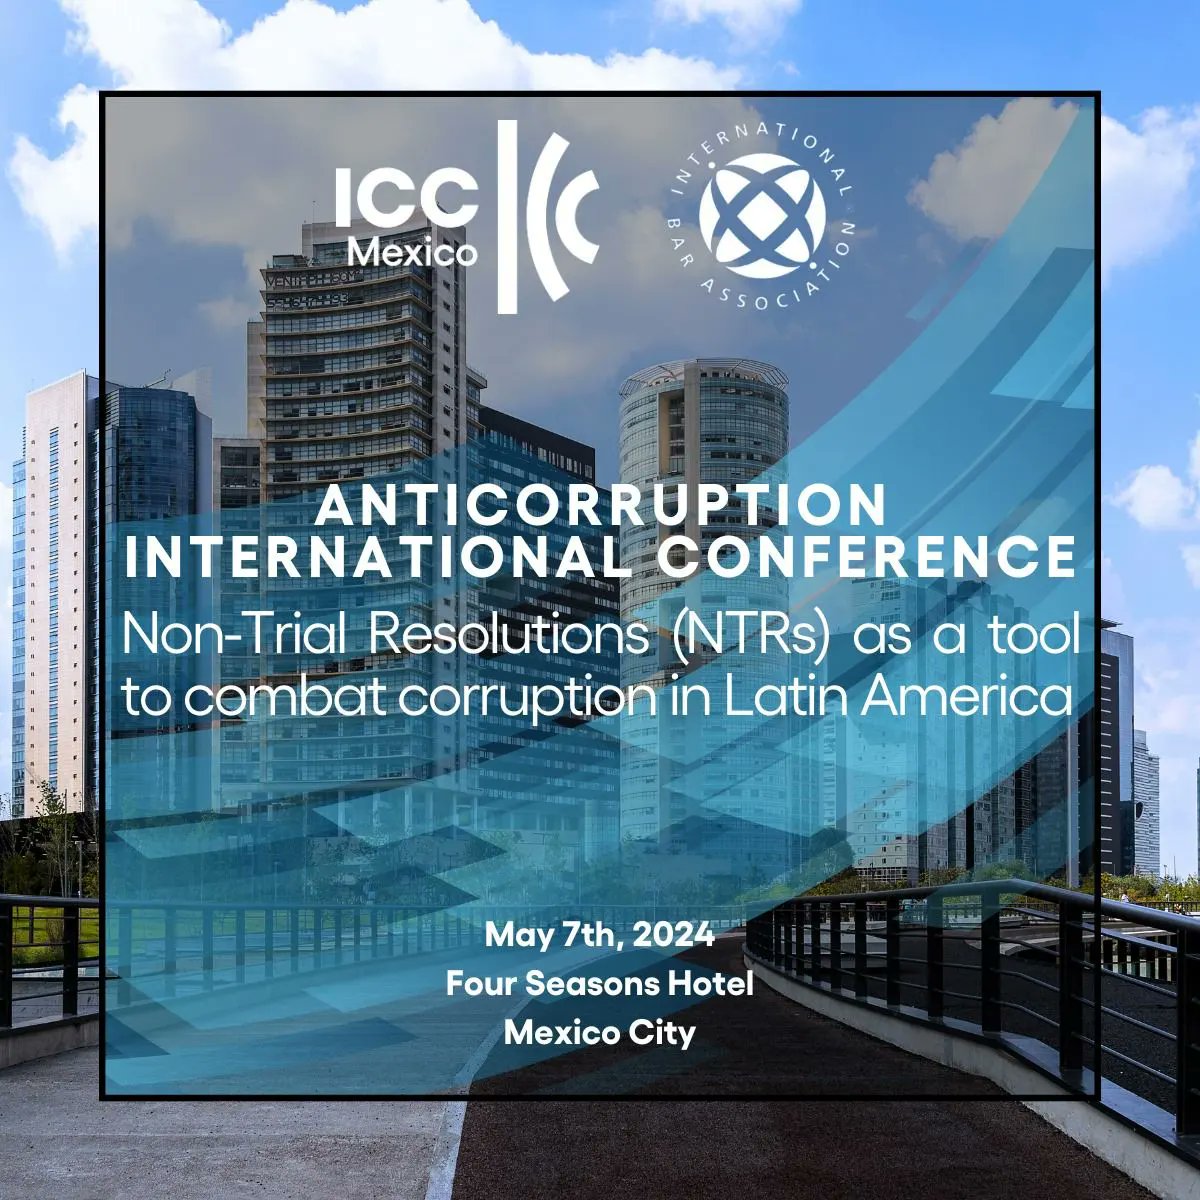 Este 7 de mayo, @IBAnews y la @ICCMEXICO te invitan a la Conferencia Internacional sobre el uso de Resoluciones No Judiciales en investigaciones criminales con expertos y expertas de diversos países que discutirán sobre buenas prácticas y tendencias en #LATAM. @Esmeru21